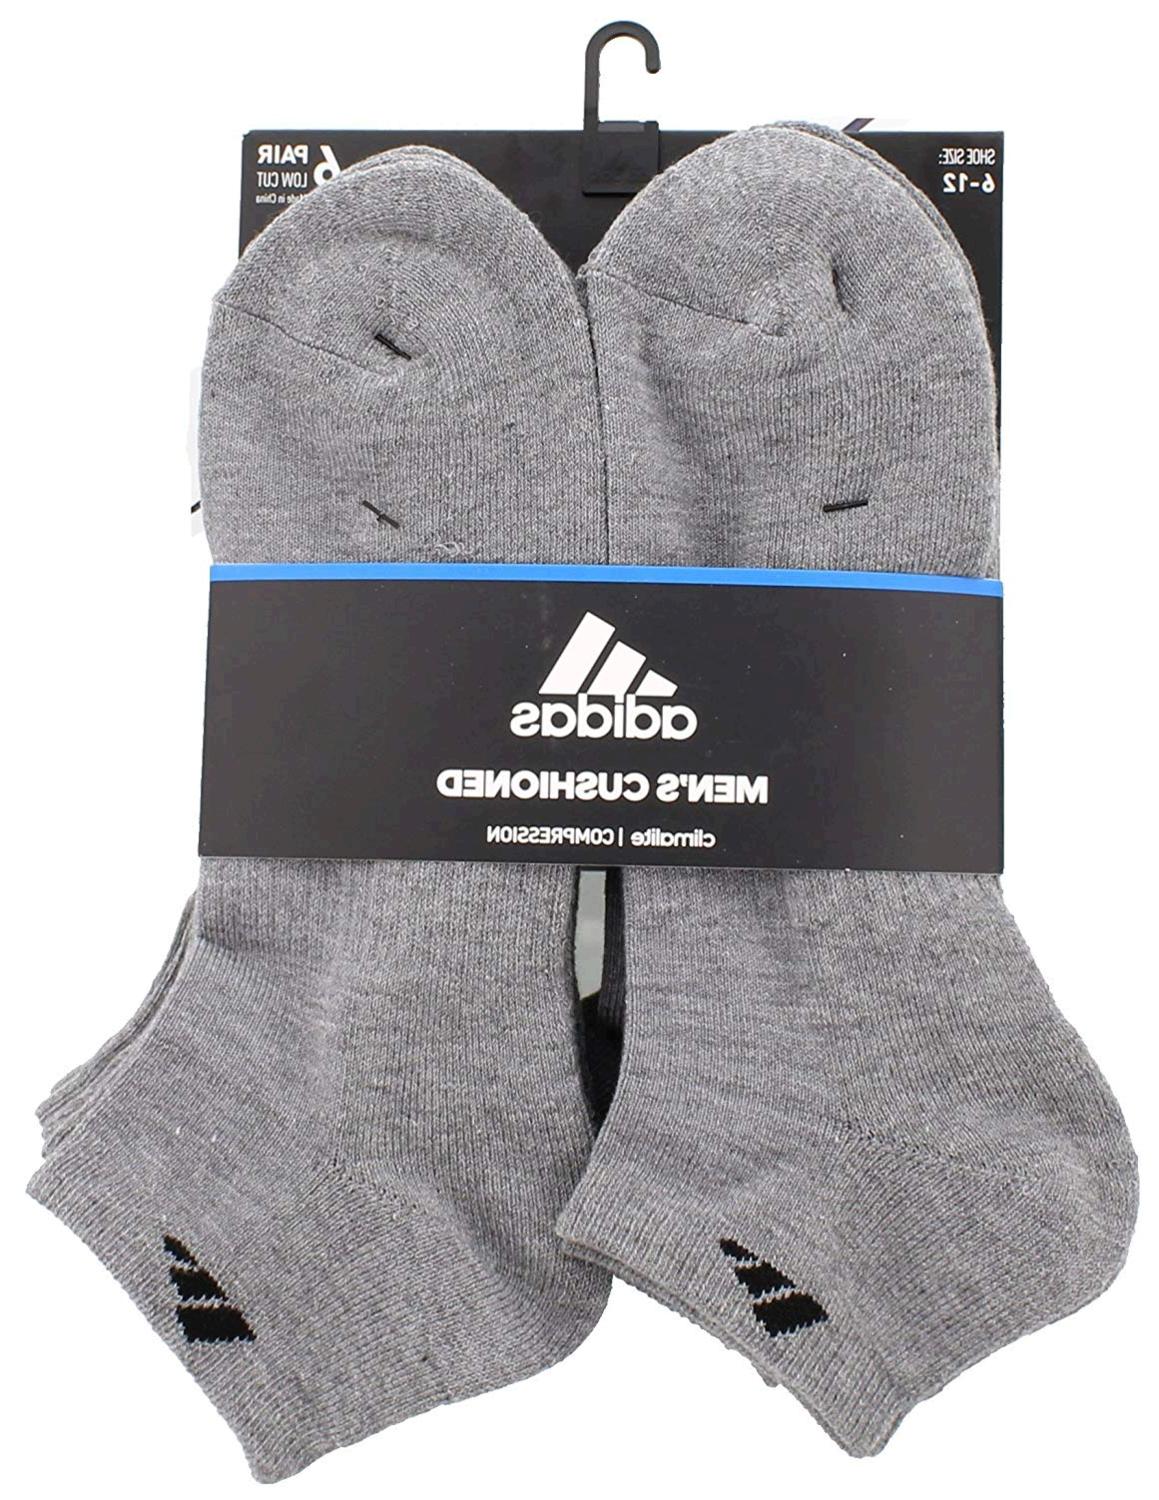 adidas Men's Cushioned Athletic Low Cut Socks, Heather Grey/Black, Size ...